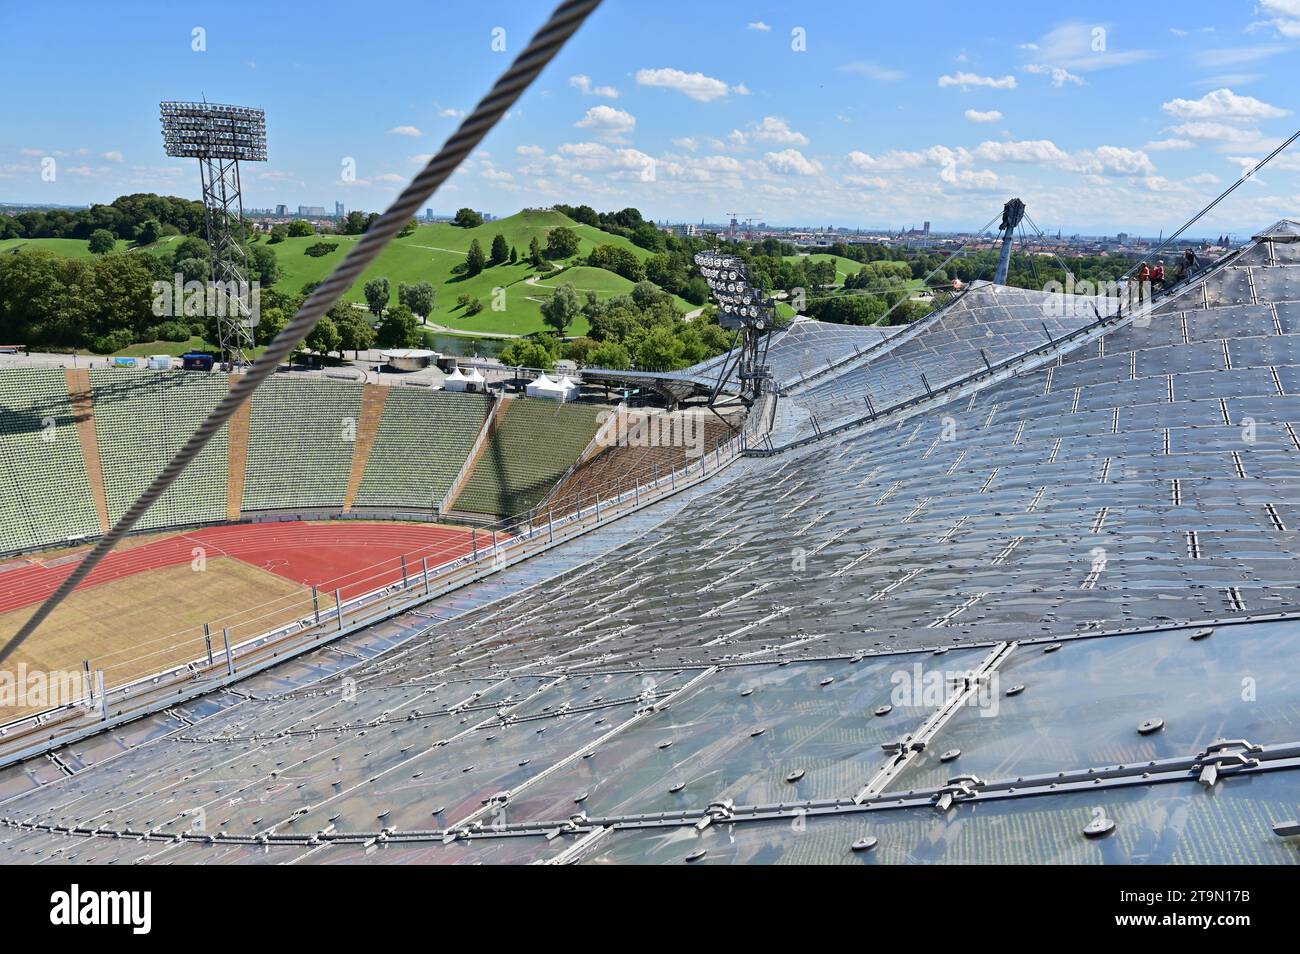 Stadio Olimpico di Monaco con il suo suggestivo tetto della tenda - il tetto della tenda può essere percorsa a piedi come parte delle visite guidate Foto Stock